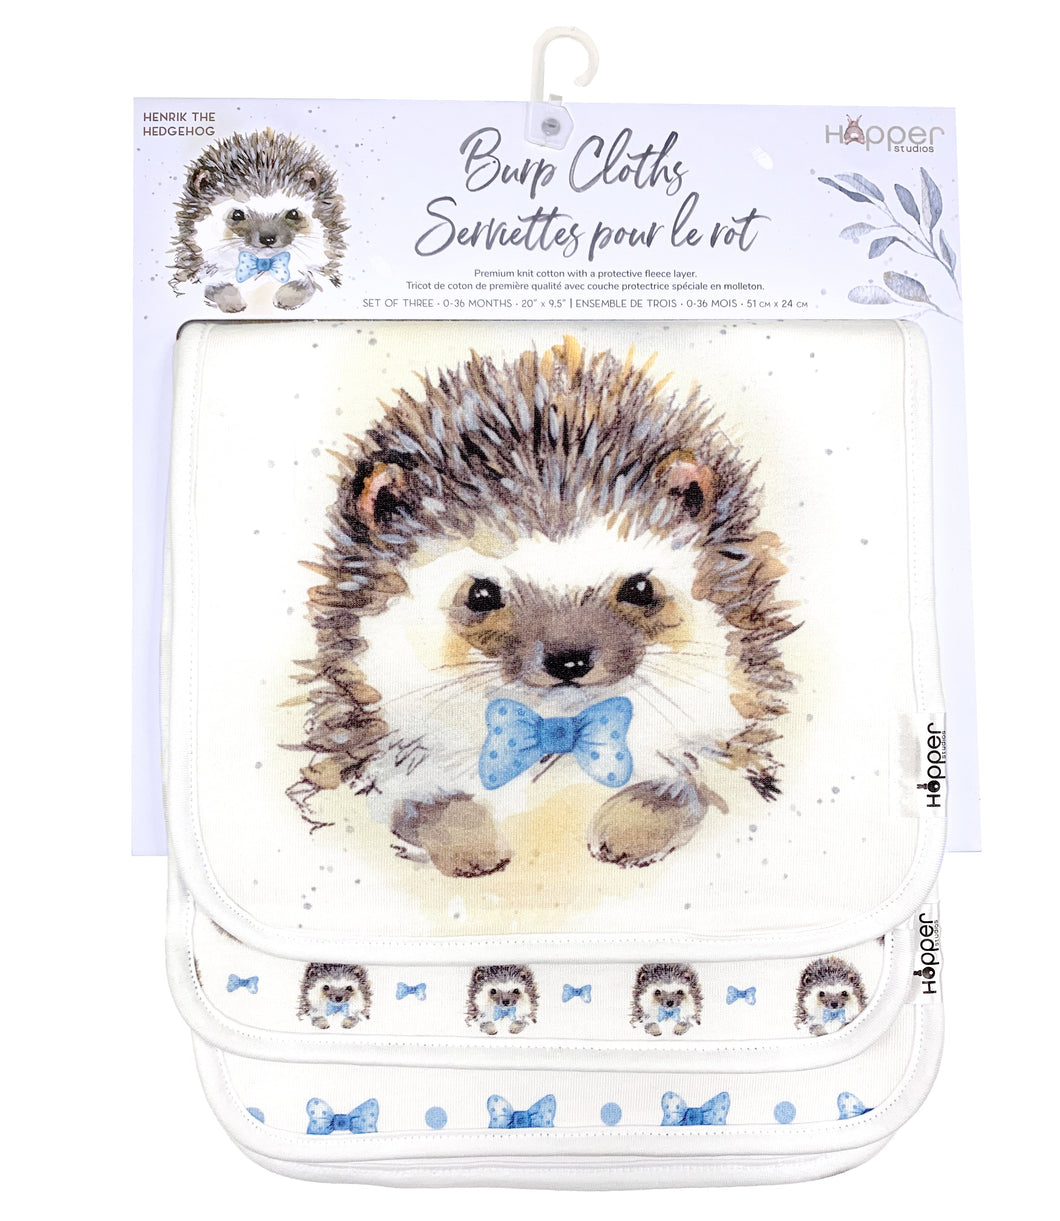 Hopper Studios Baby Burp Cloth - Henrik the Hedgehog